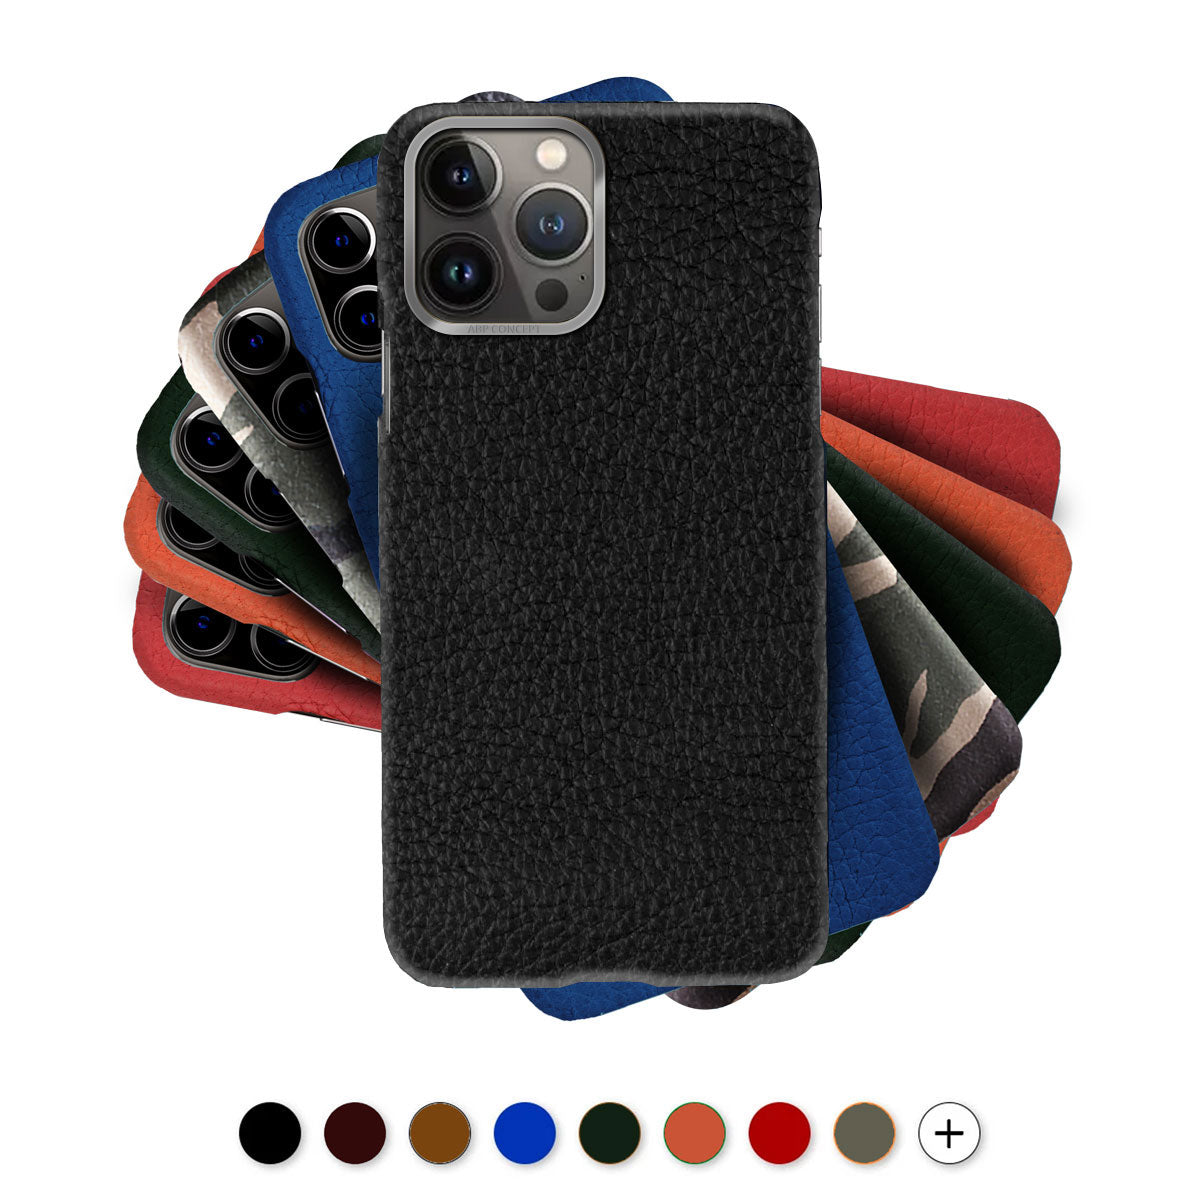 Leather iPhone case / cover - iPhone 13 ( Pro / Max / Mini ) - Buffalo skin